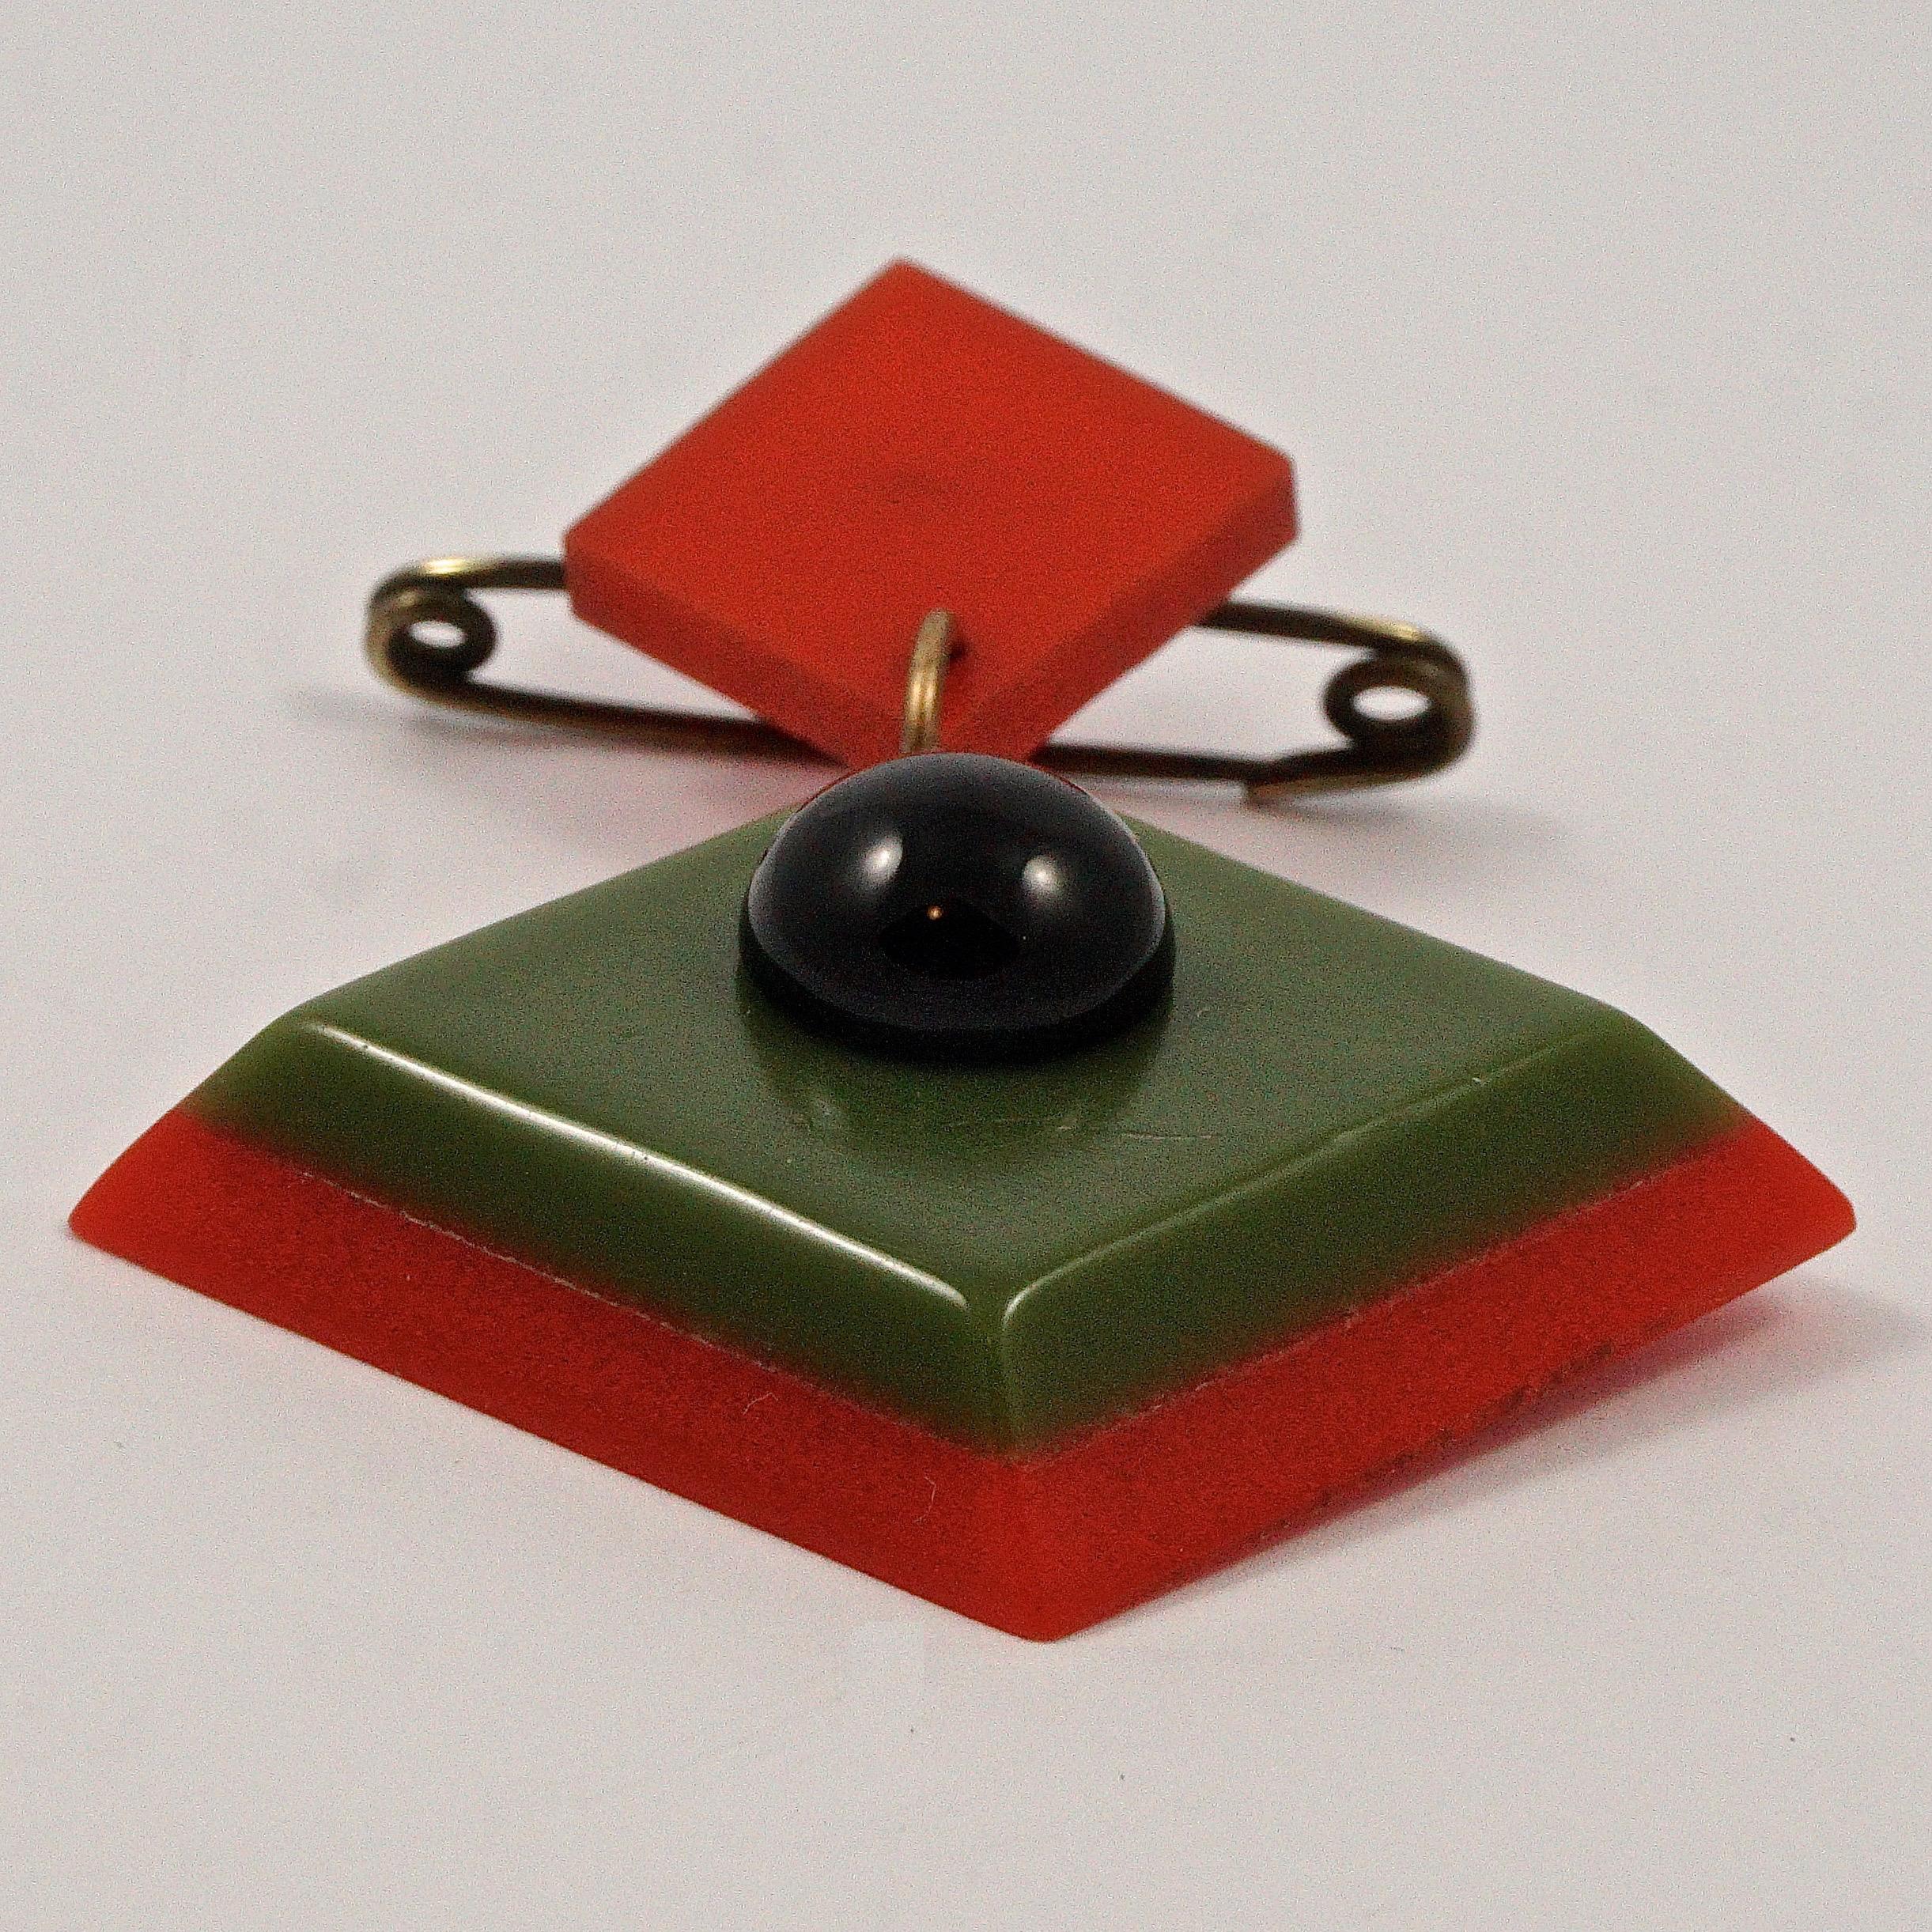 Wunderschöne geometrische Art-Déco-Brosche mit roten und grünen Kunststoffquadraten und einer schwarzen Glaskuppel. Messlänge 6,1 cm / 2,4 Zoll bei maximaler Breite 4,45 cm / 1,75 Zoll. Die Brosche ist in sehr gutem Zustand, mit einigen